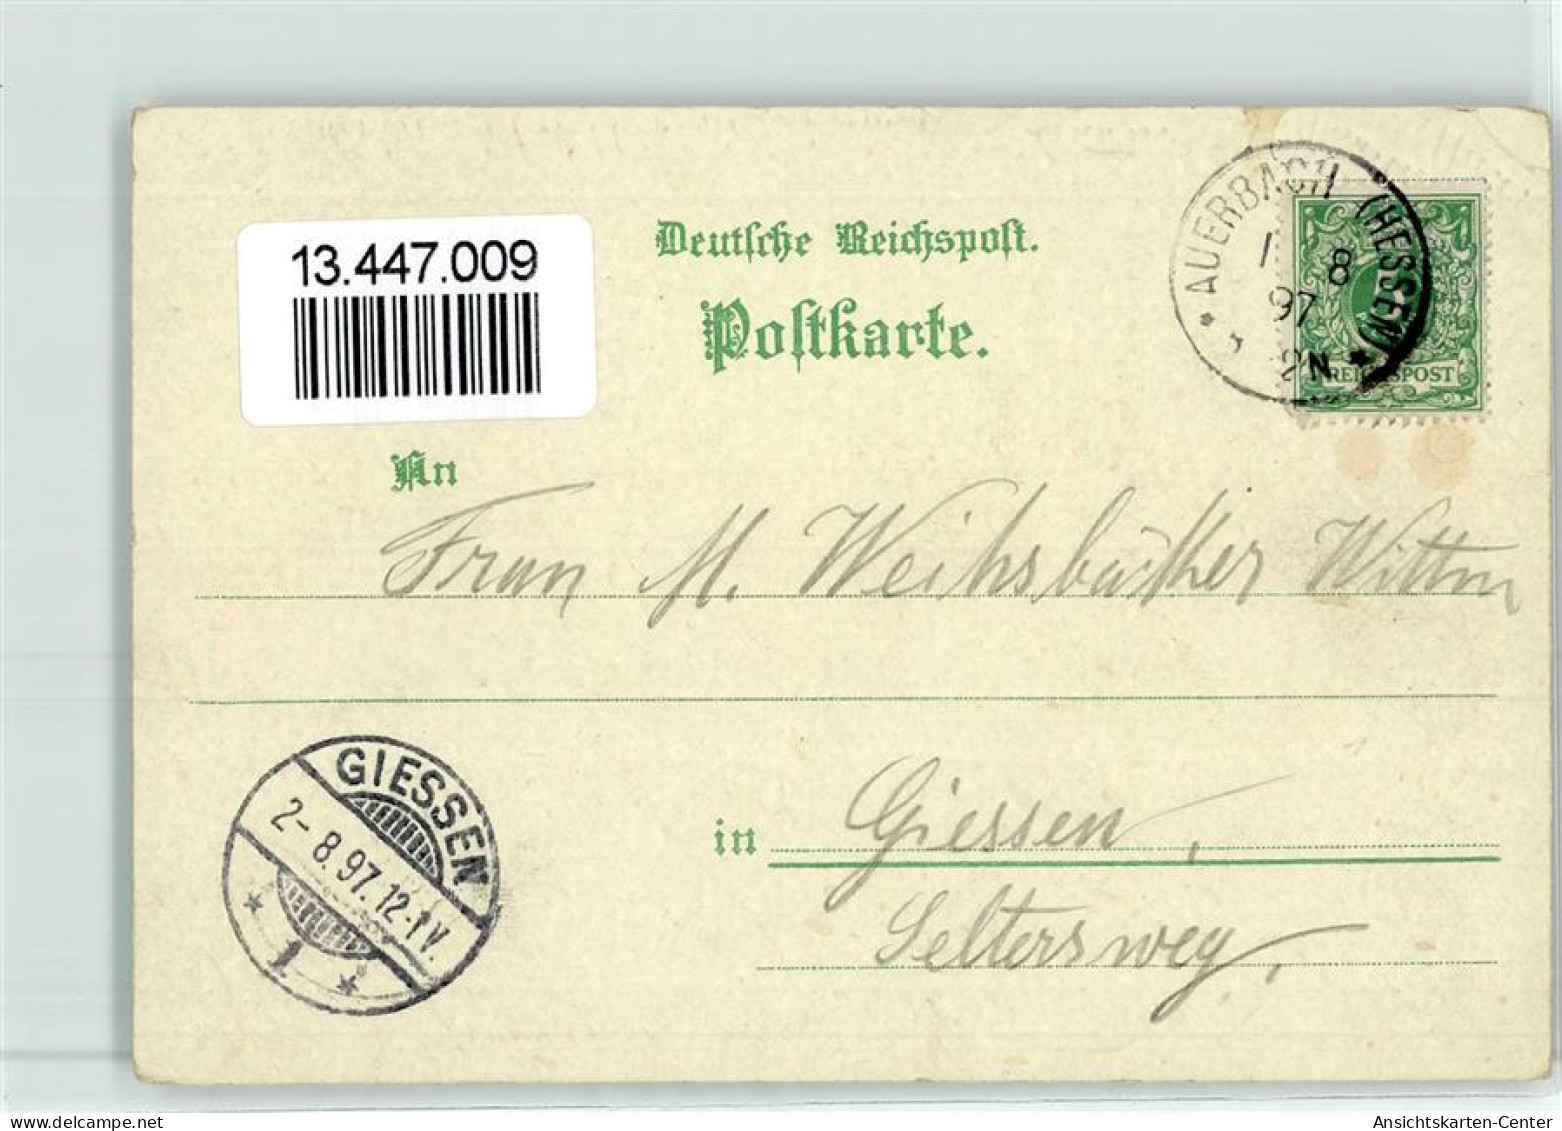 13447009 - Auerbach - Bensheim